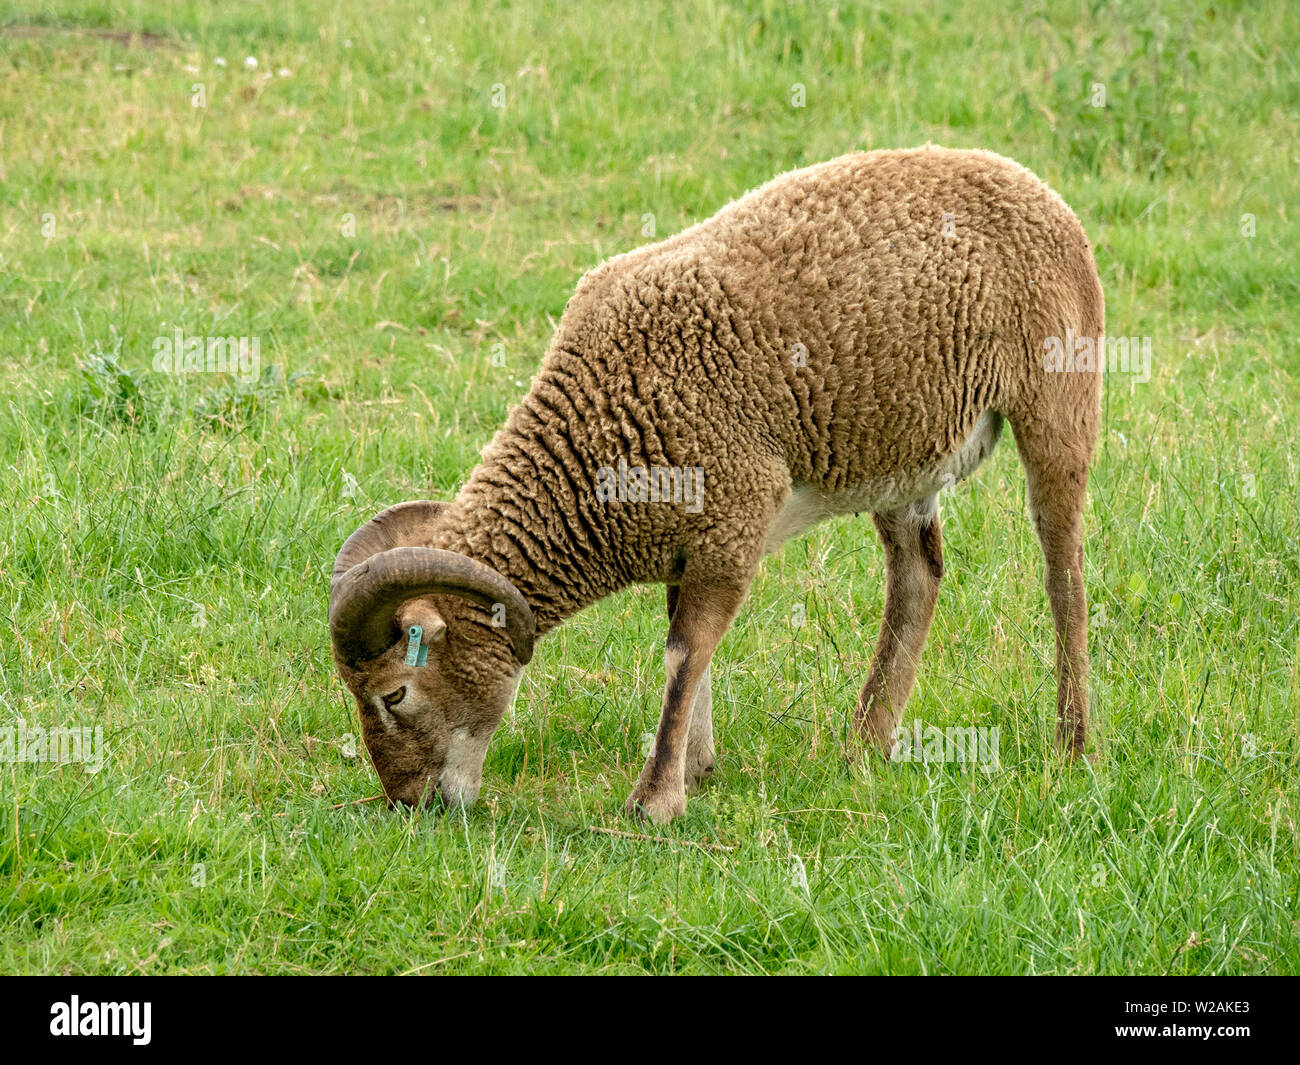 Soay-schafe als Schafe, eine seltene Rasse der Schafe (Ovis aries) mit Hörnern und Braun wolliges Fell Beweidung in Gras Feld in Cambridgeshire, Großbritannien Stockfoto